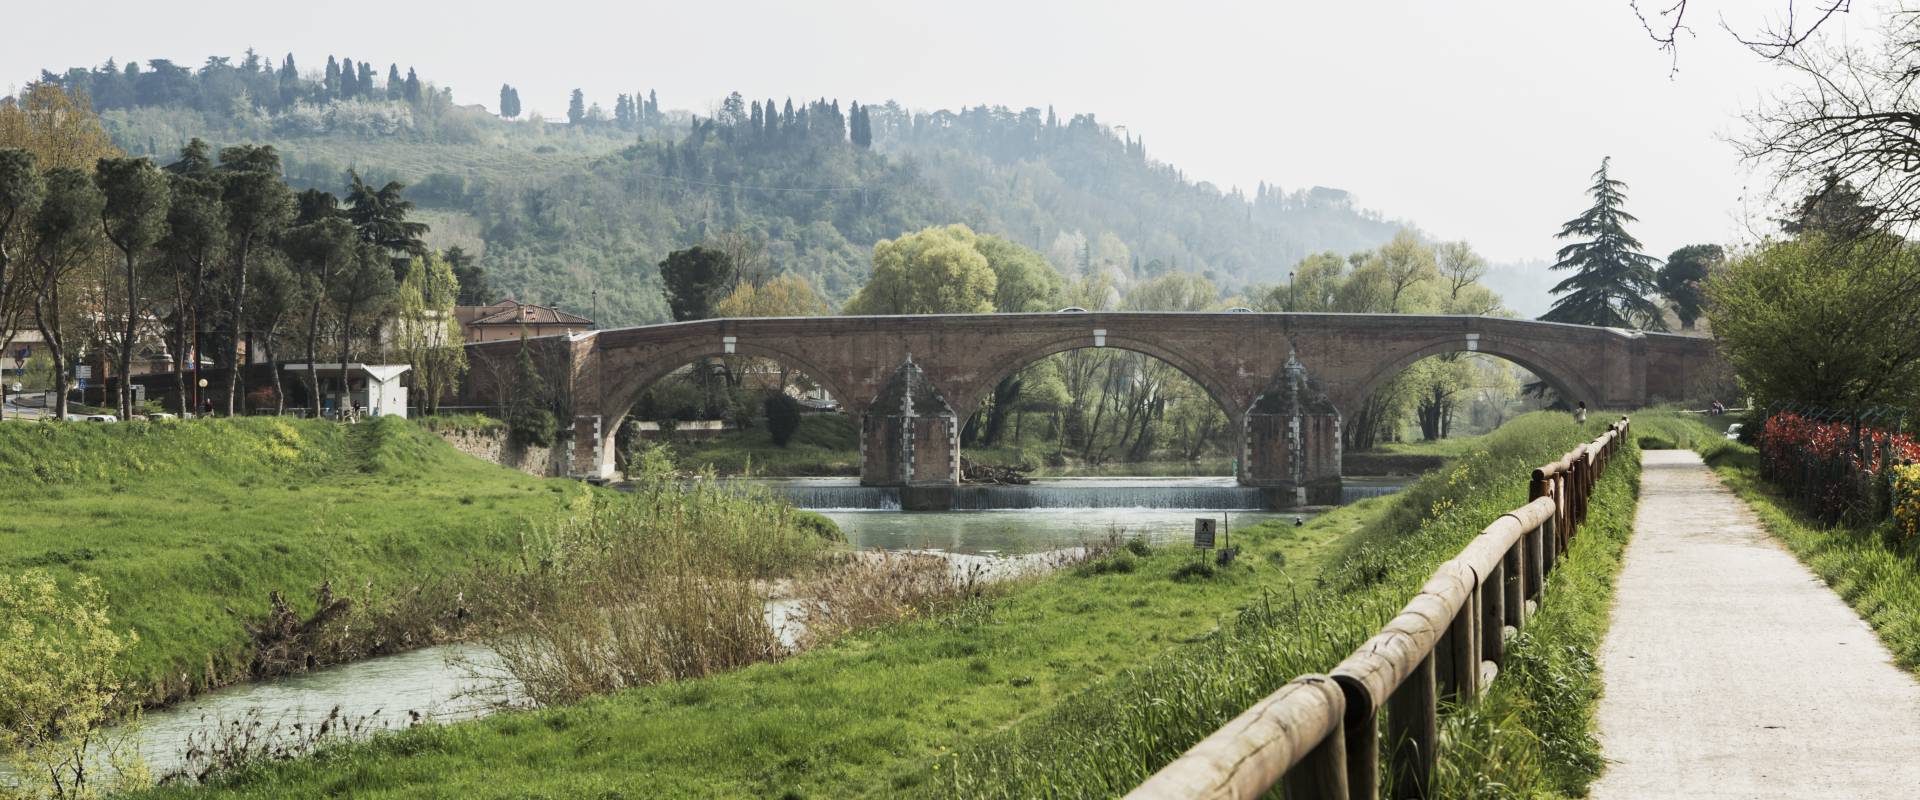 Panoramica sul ponte vecchio photo by Boschetti Marco 65